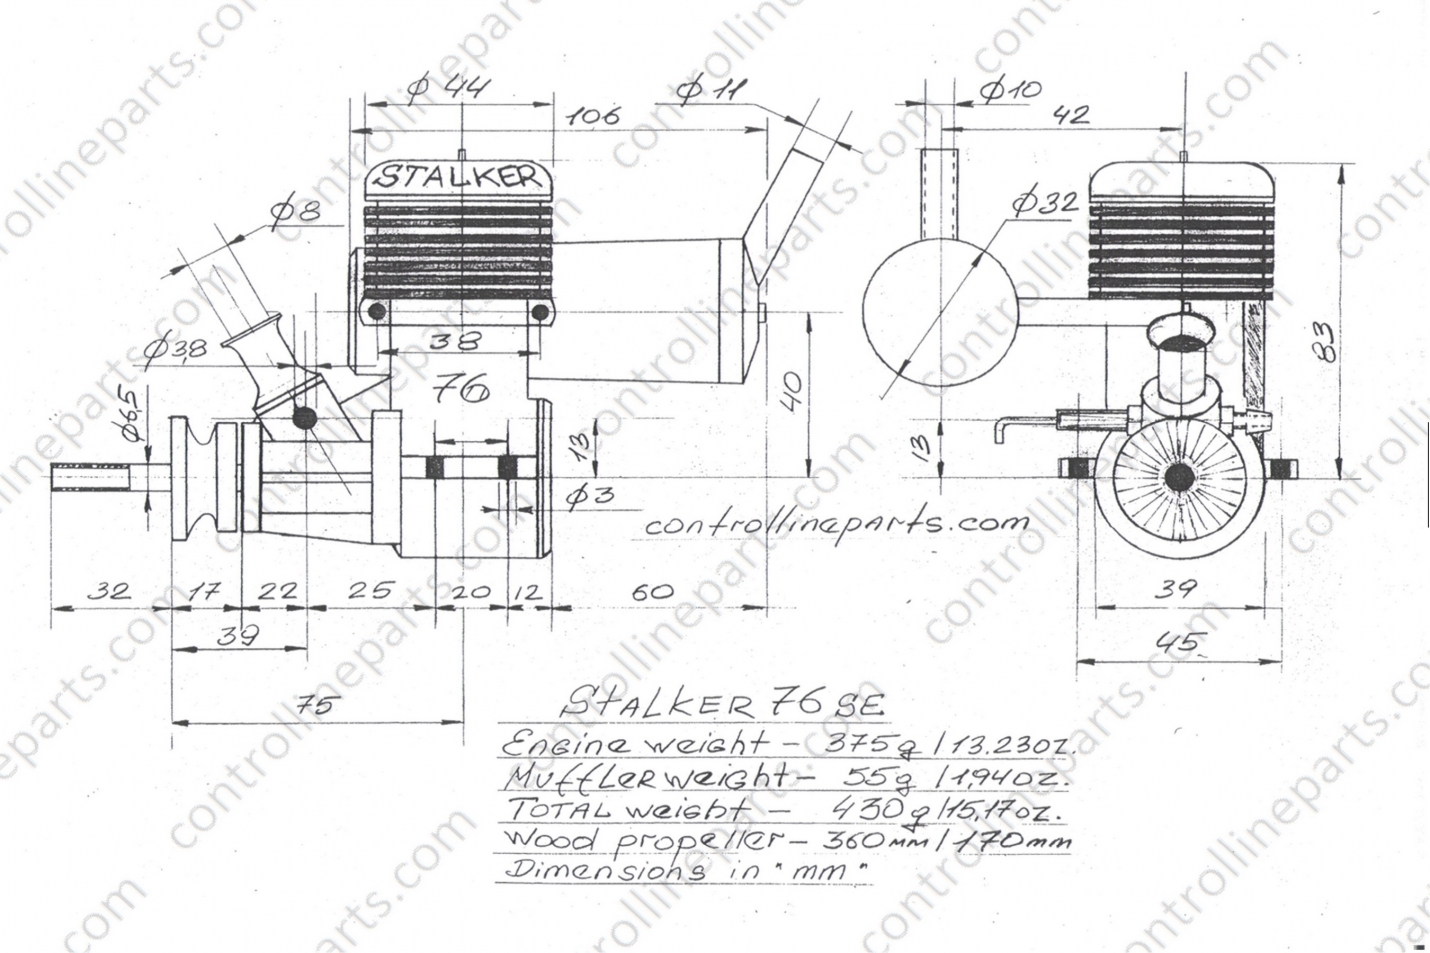 Stalker 76 SE engine